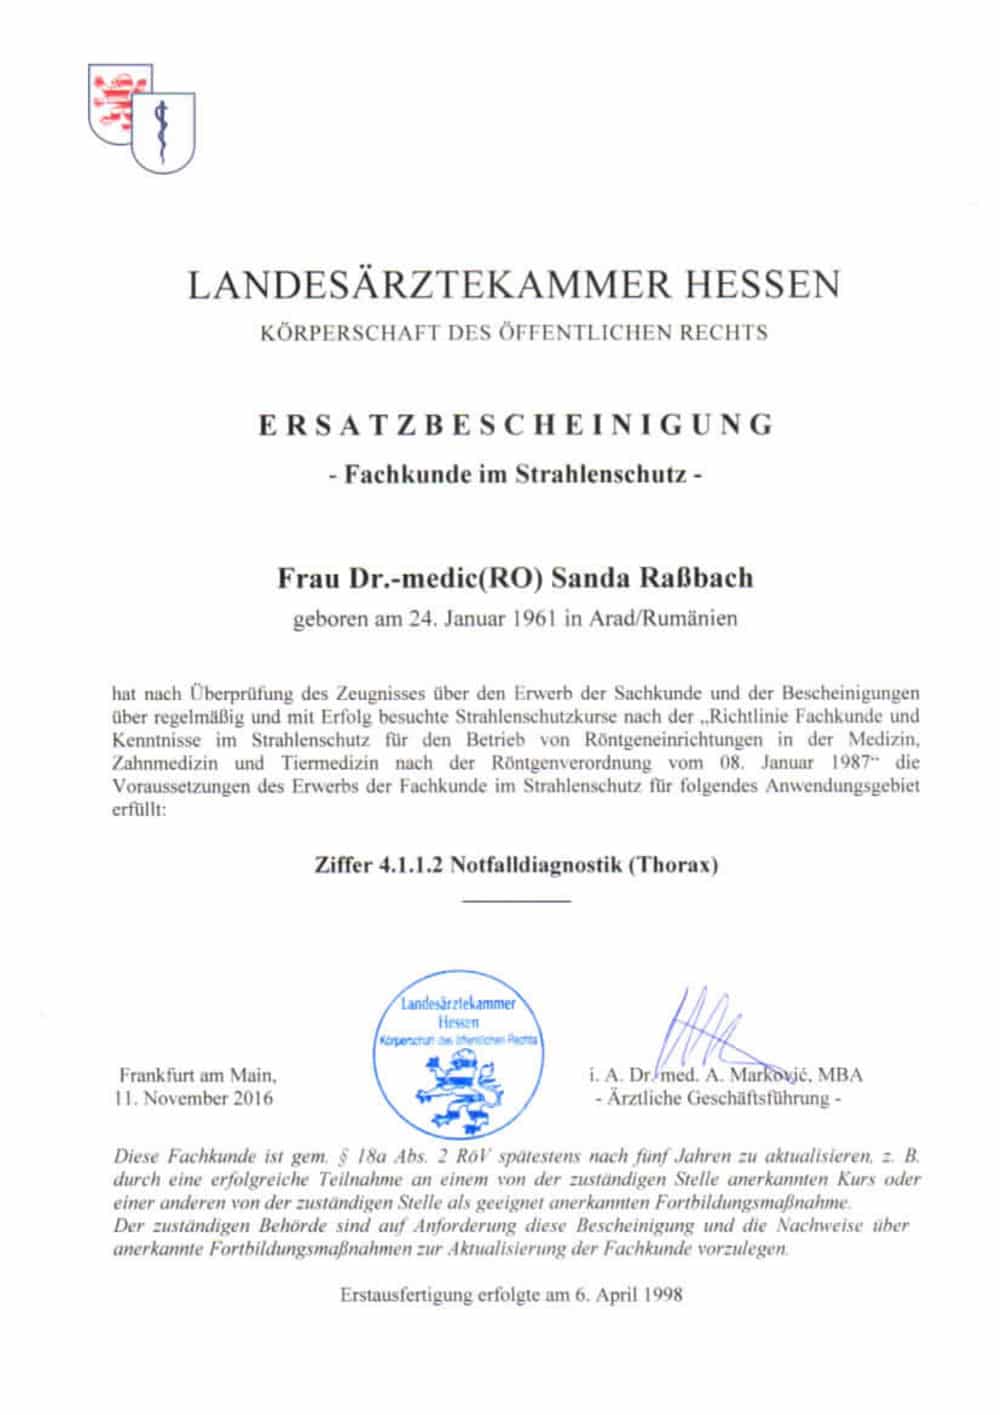 Bescheinigung Landesärztekammer Hessen - Fachkunde Strahlenschutz